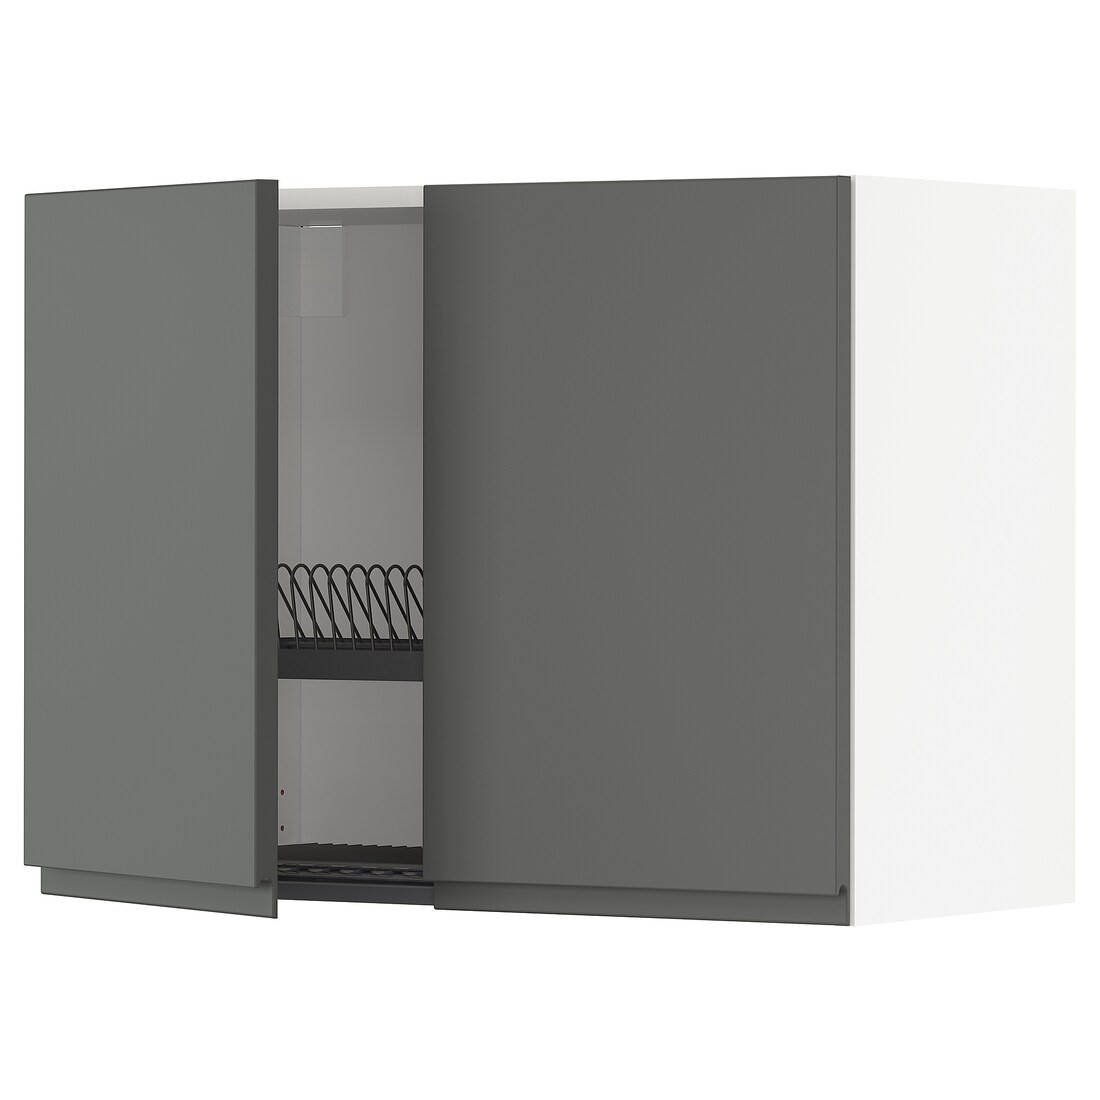 METOD МЕТОД Навесной шкаф с посудной сушилкой / 2 дверцы, белый / Voxtorp темно-серый, 80x60 см